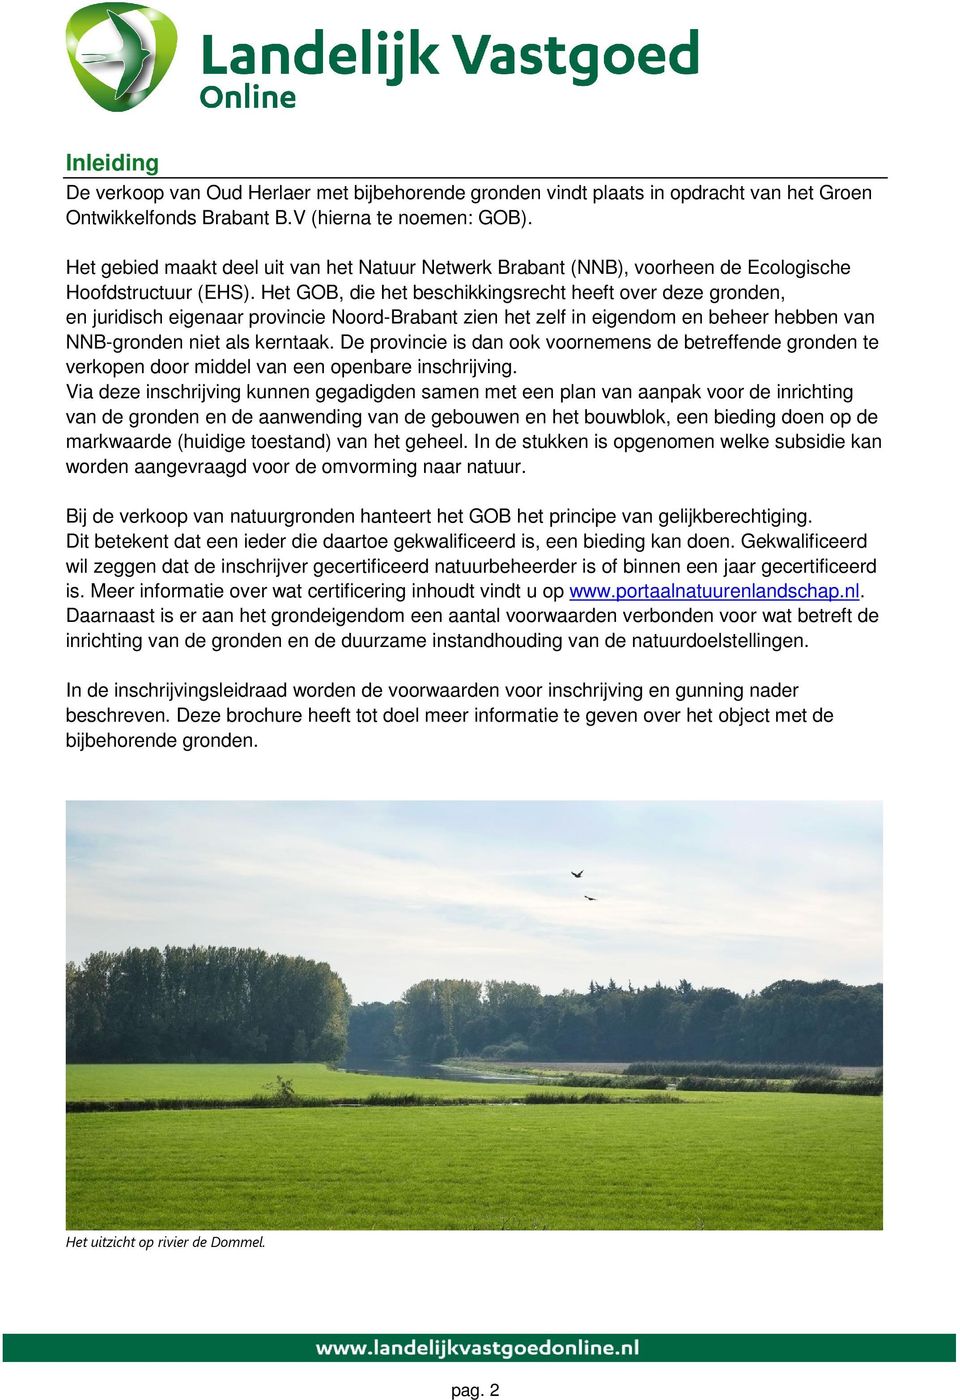 Het GOB, die het beschikkingsrecht heeft over deze gronden, en juridisch eigenaar provincie Noord-Brabant zien het zelf in eigendom en beheer hebben van NNB-gronden niet als kerntaak.